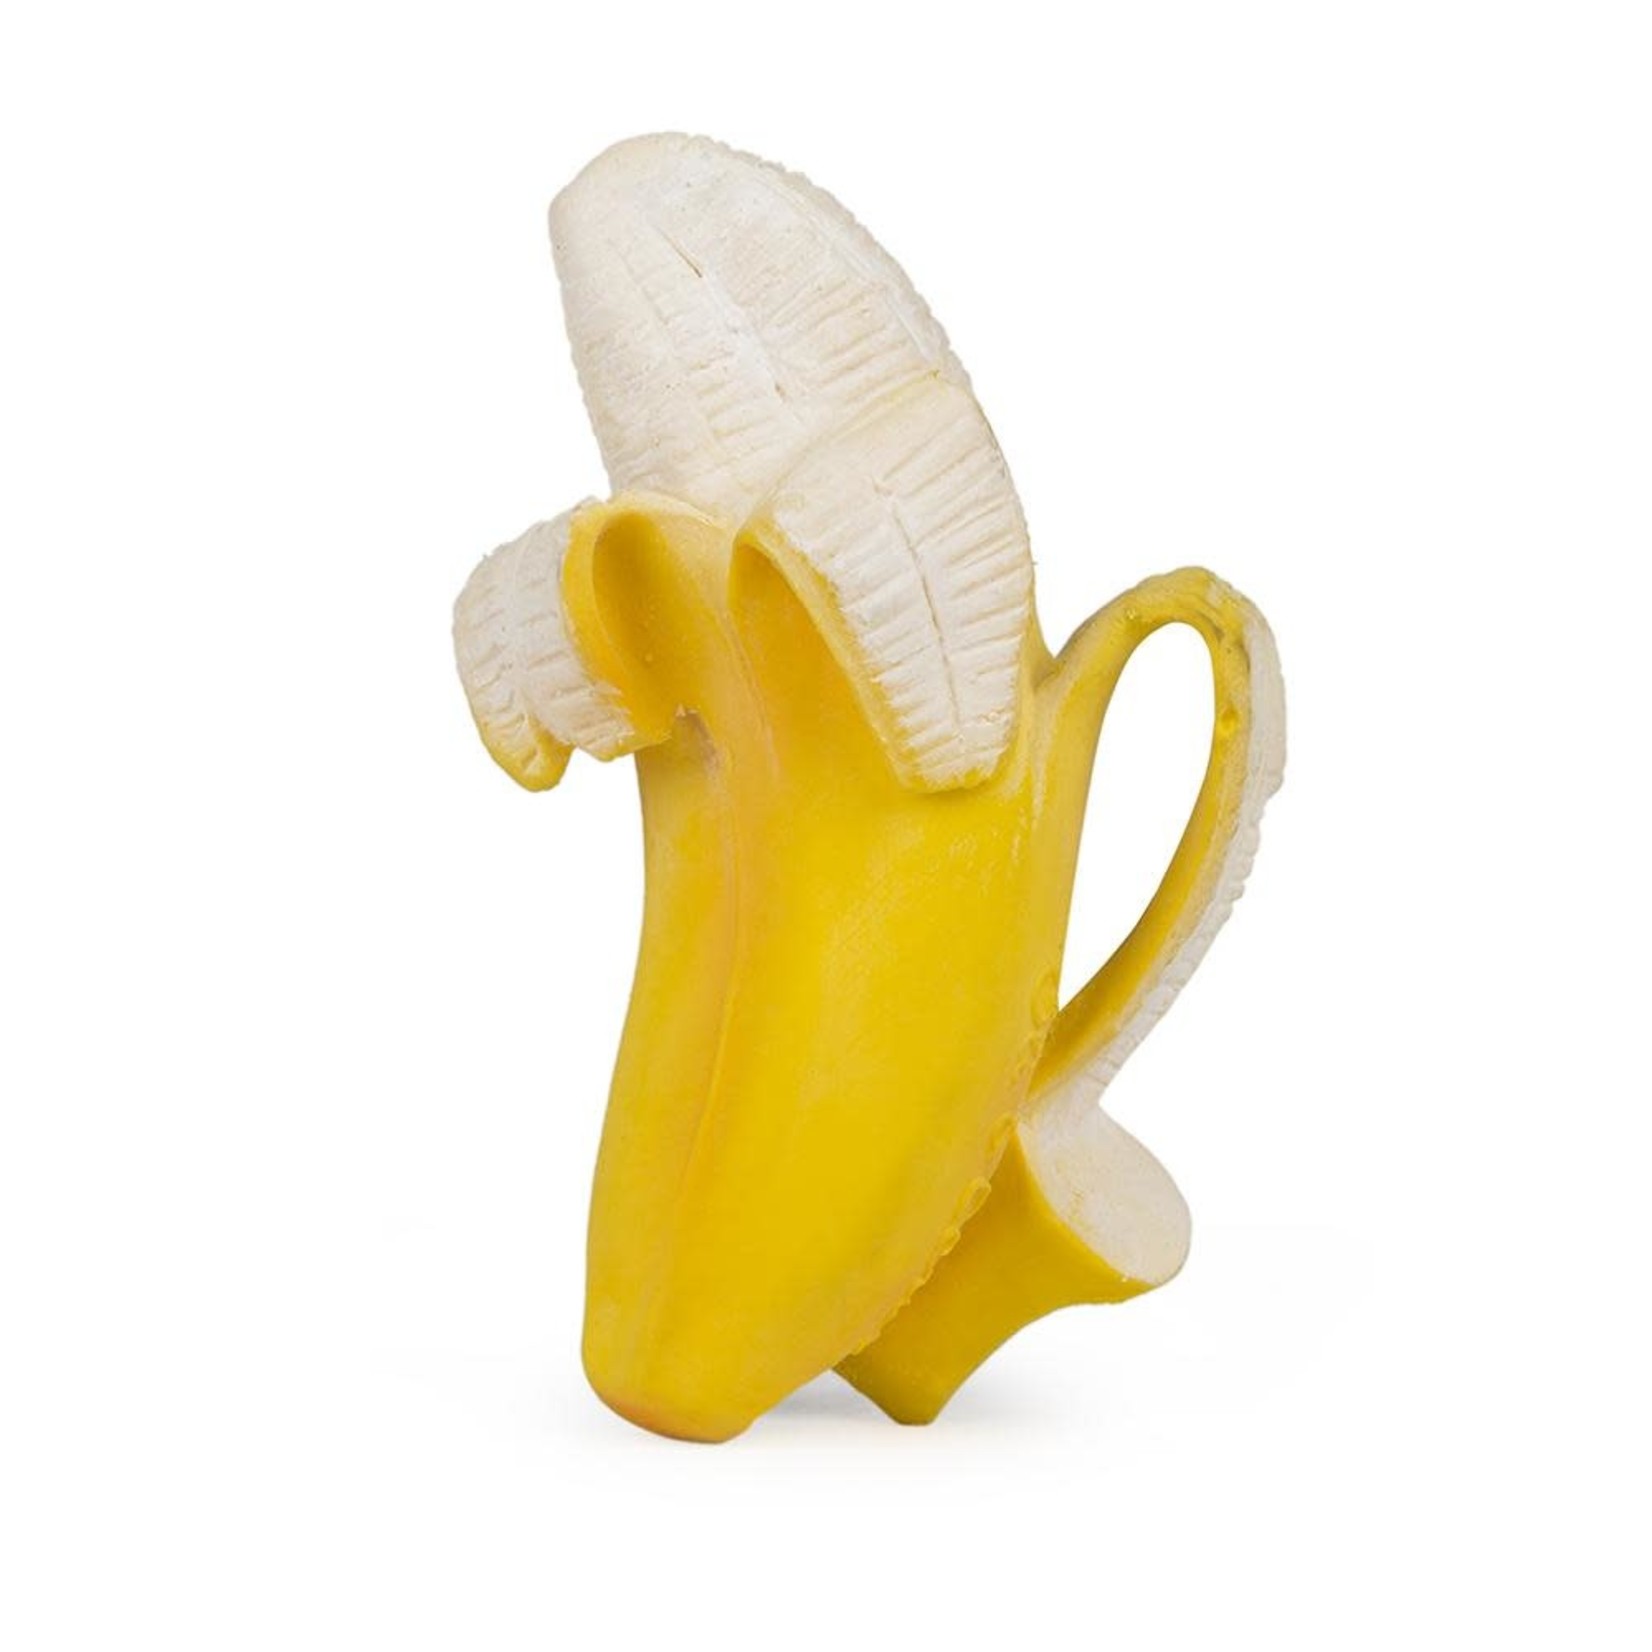 oli & carol ana the banana